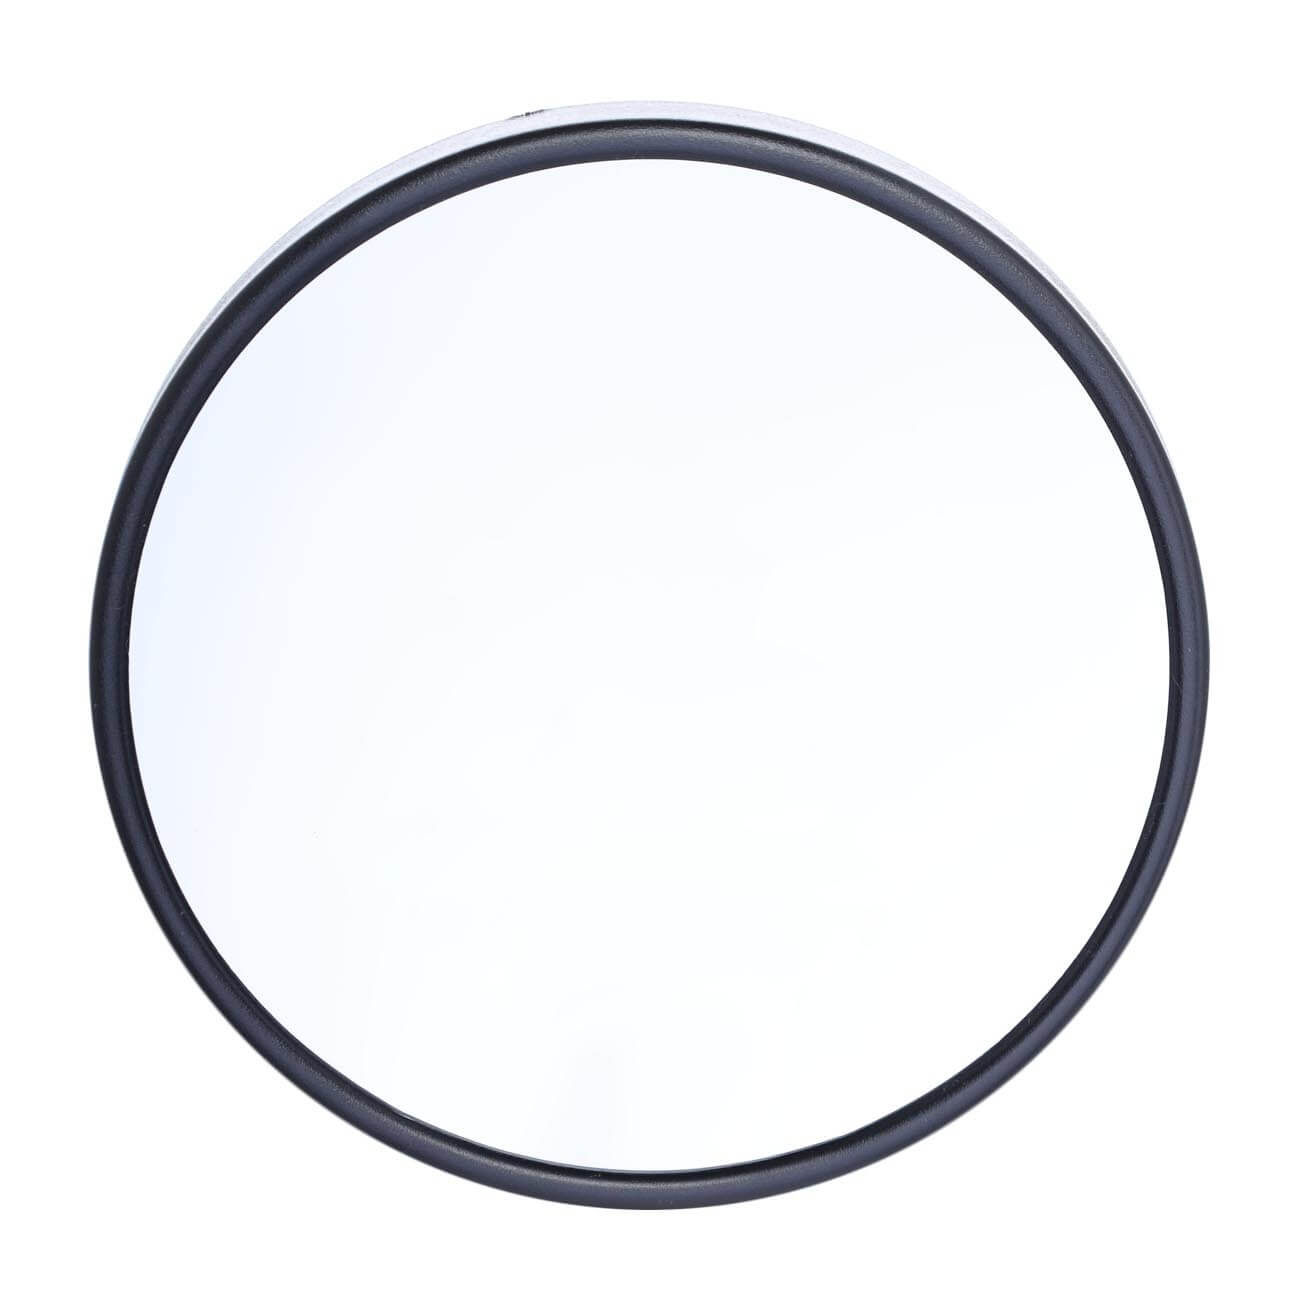 Зеркало подвесное, 13 см, увеличительное, на присосках, пластик, круглое, черное, Mirror подвесное кресло арт sc 007